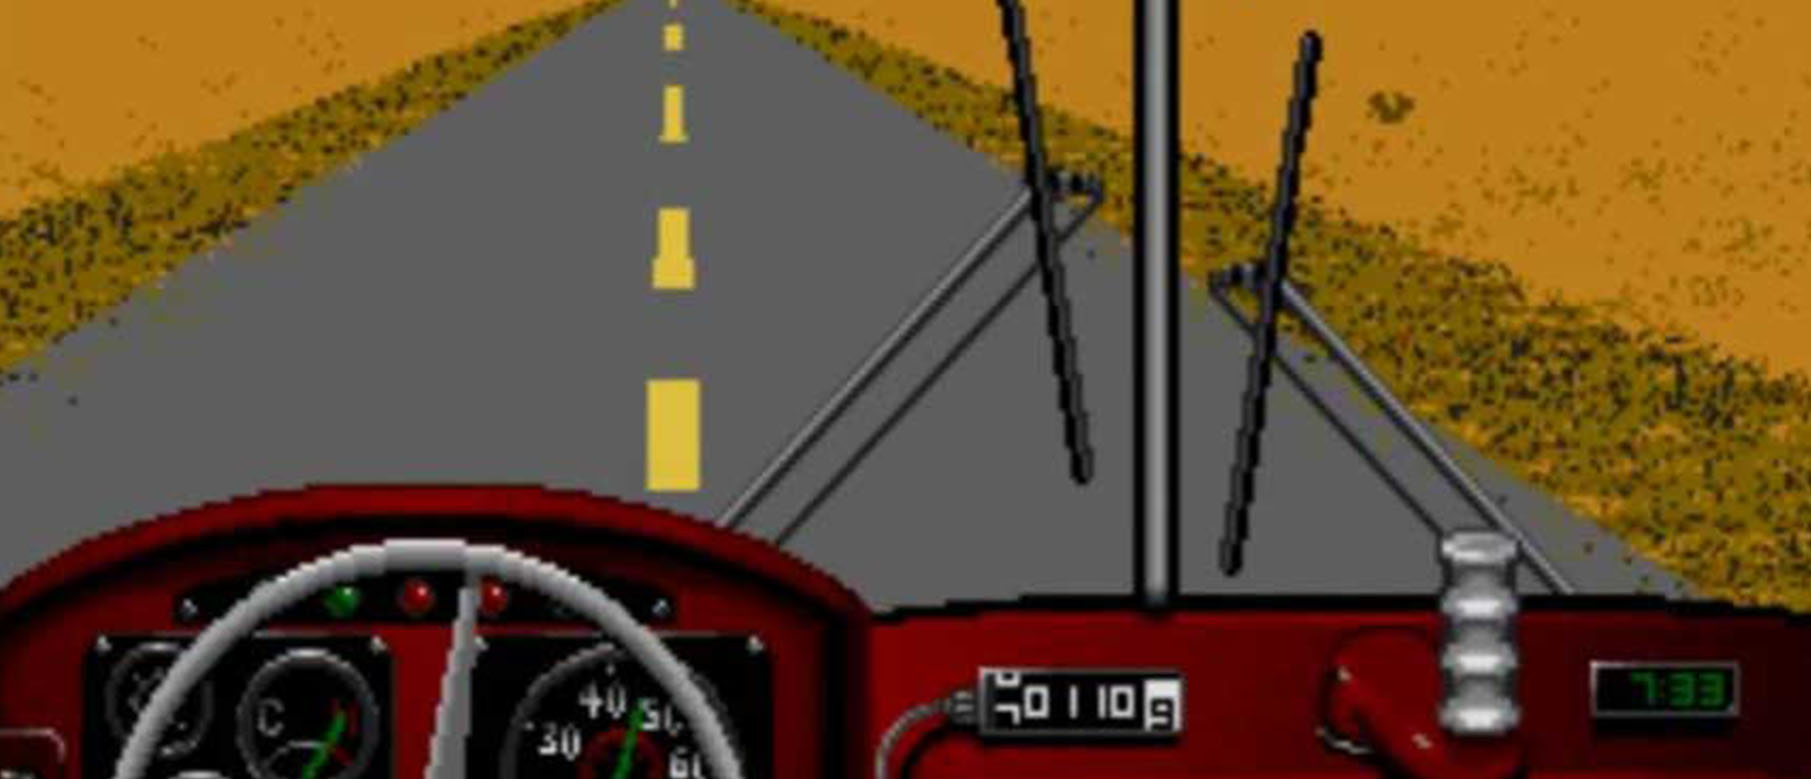 Изображение к Сиквел Desert Bus, возможно, выйдет для Oculus Rift и PlayStation VR